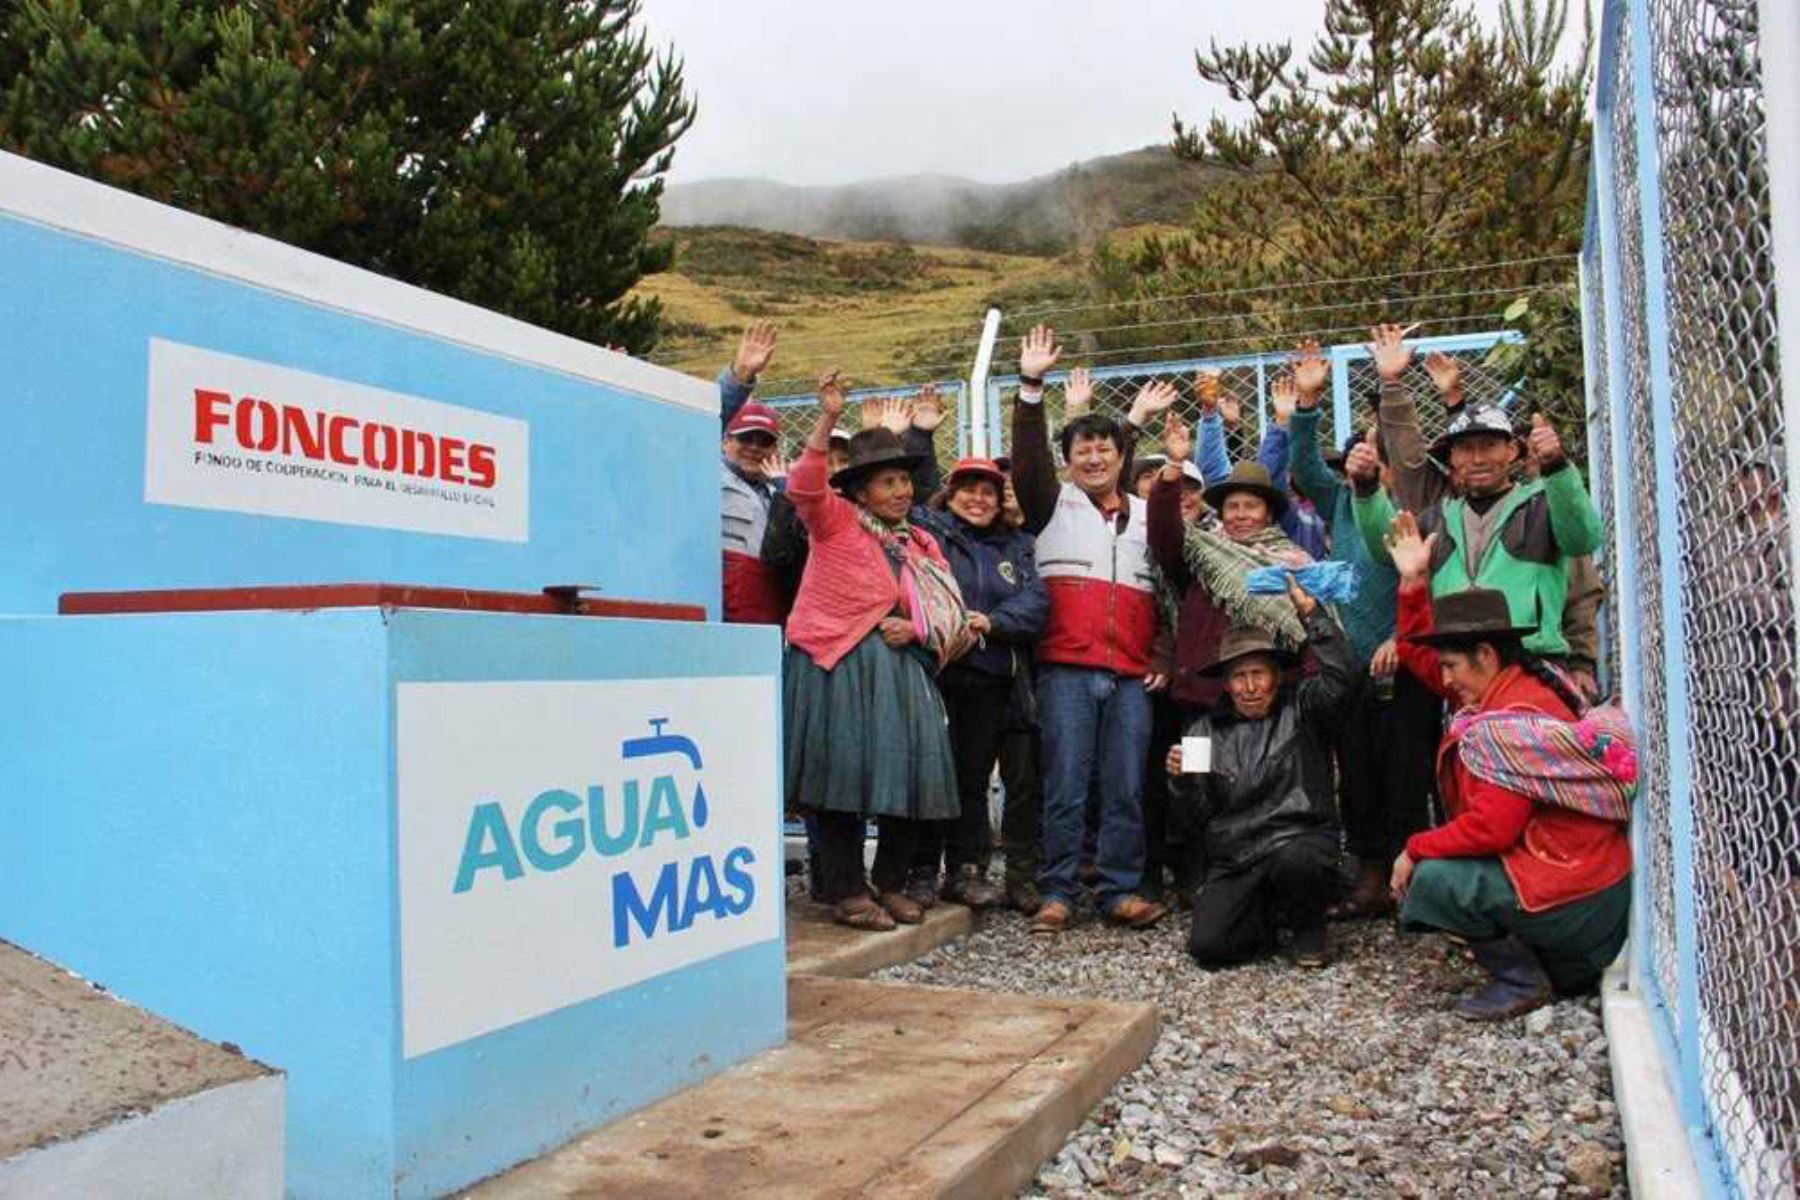 Los ciudadanos de nueve localidades del distrito de Pacobamba, provincia de Andahuaylas, región Apurímac, cuentan con acceso al agua apta para el consumo humano tras la intervención del proyecto Agua Más, del Foncodes, programa adscrito al Ministerio de Desarrollo e Inclusión Social (Midis).